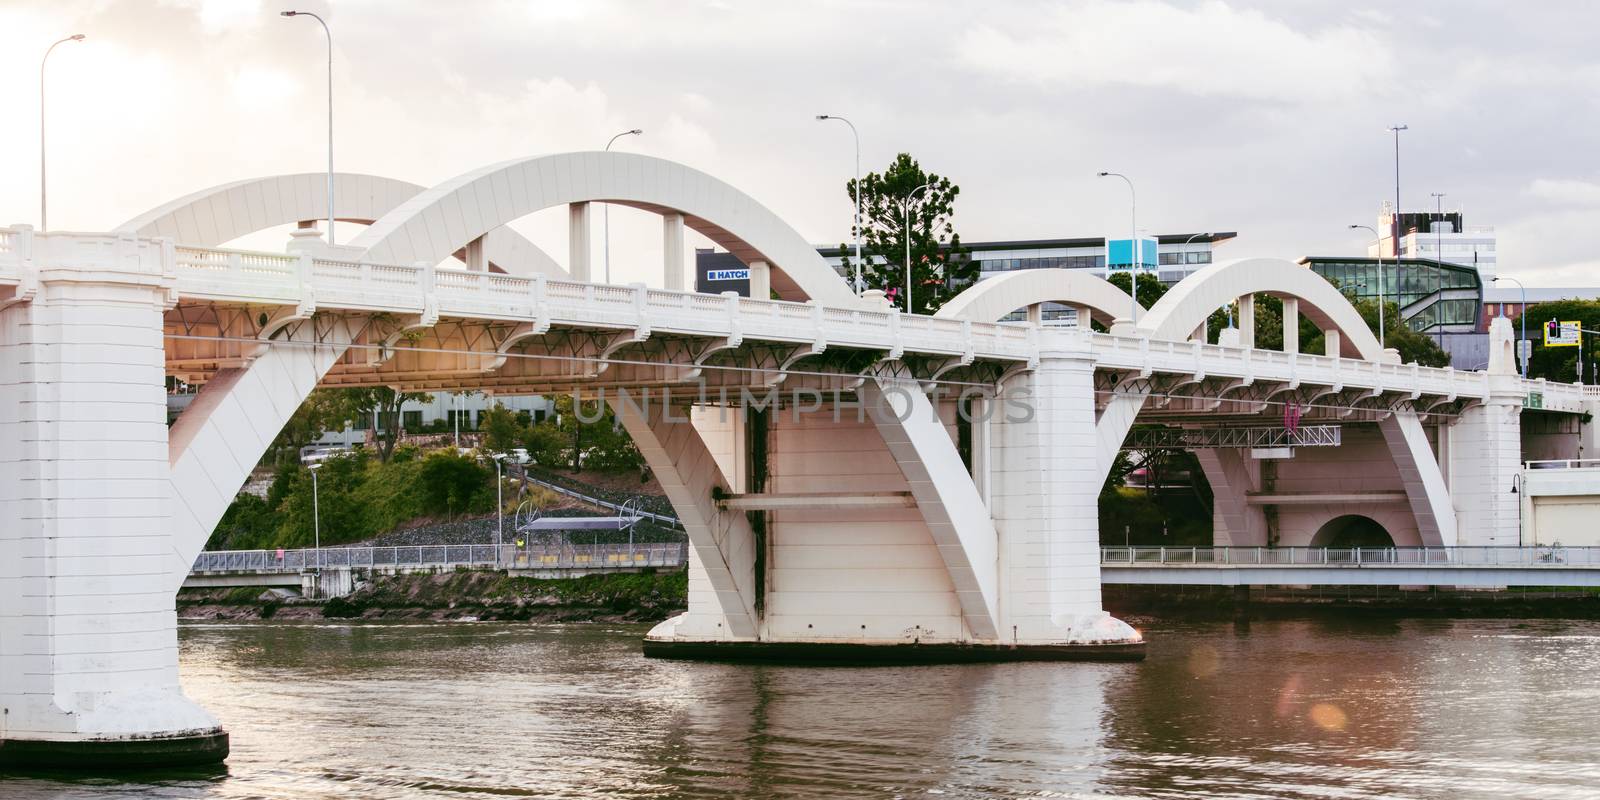 William Jolly Bridge in the afternoon in Brisbane, Queensland, Australia.